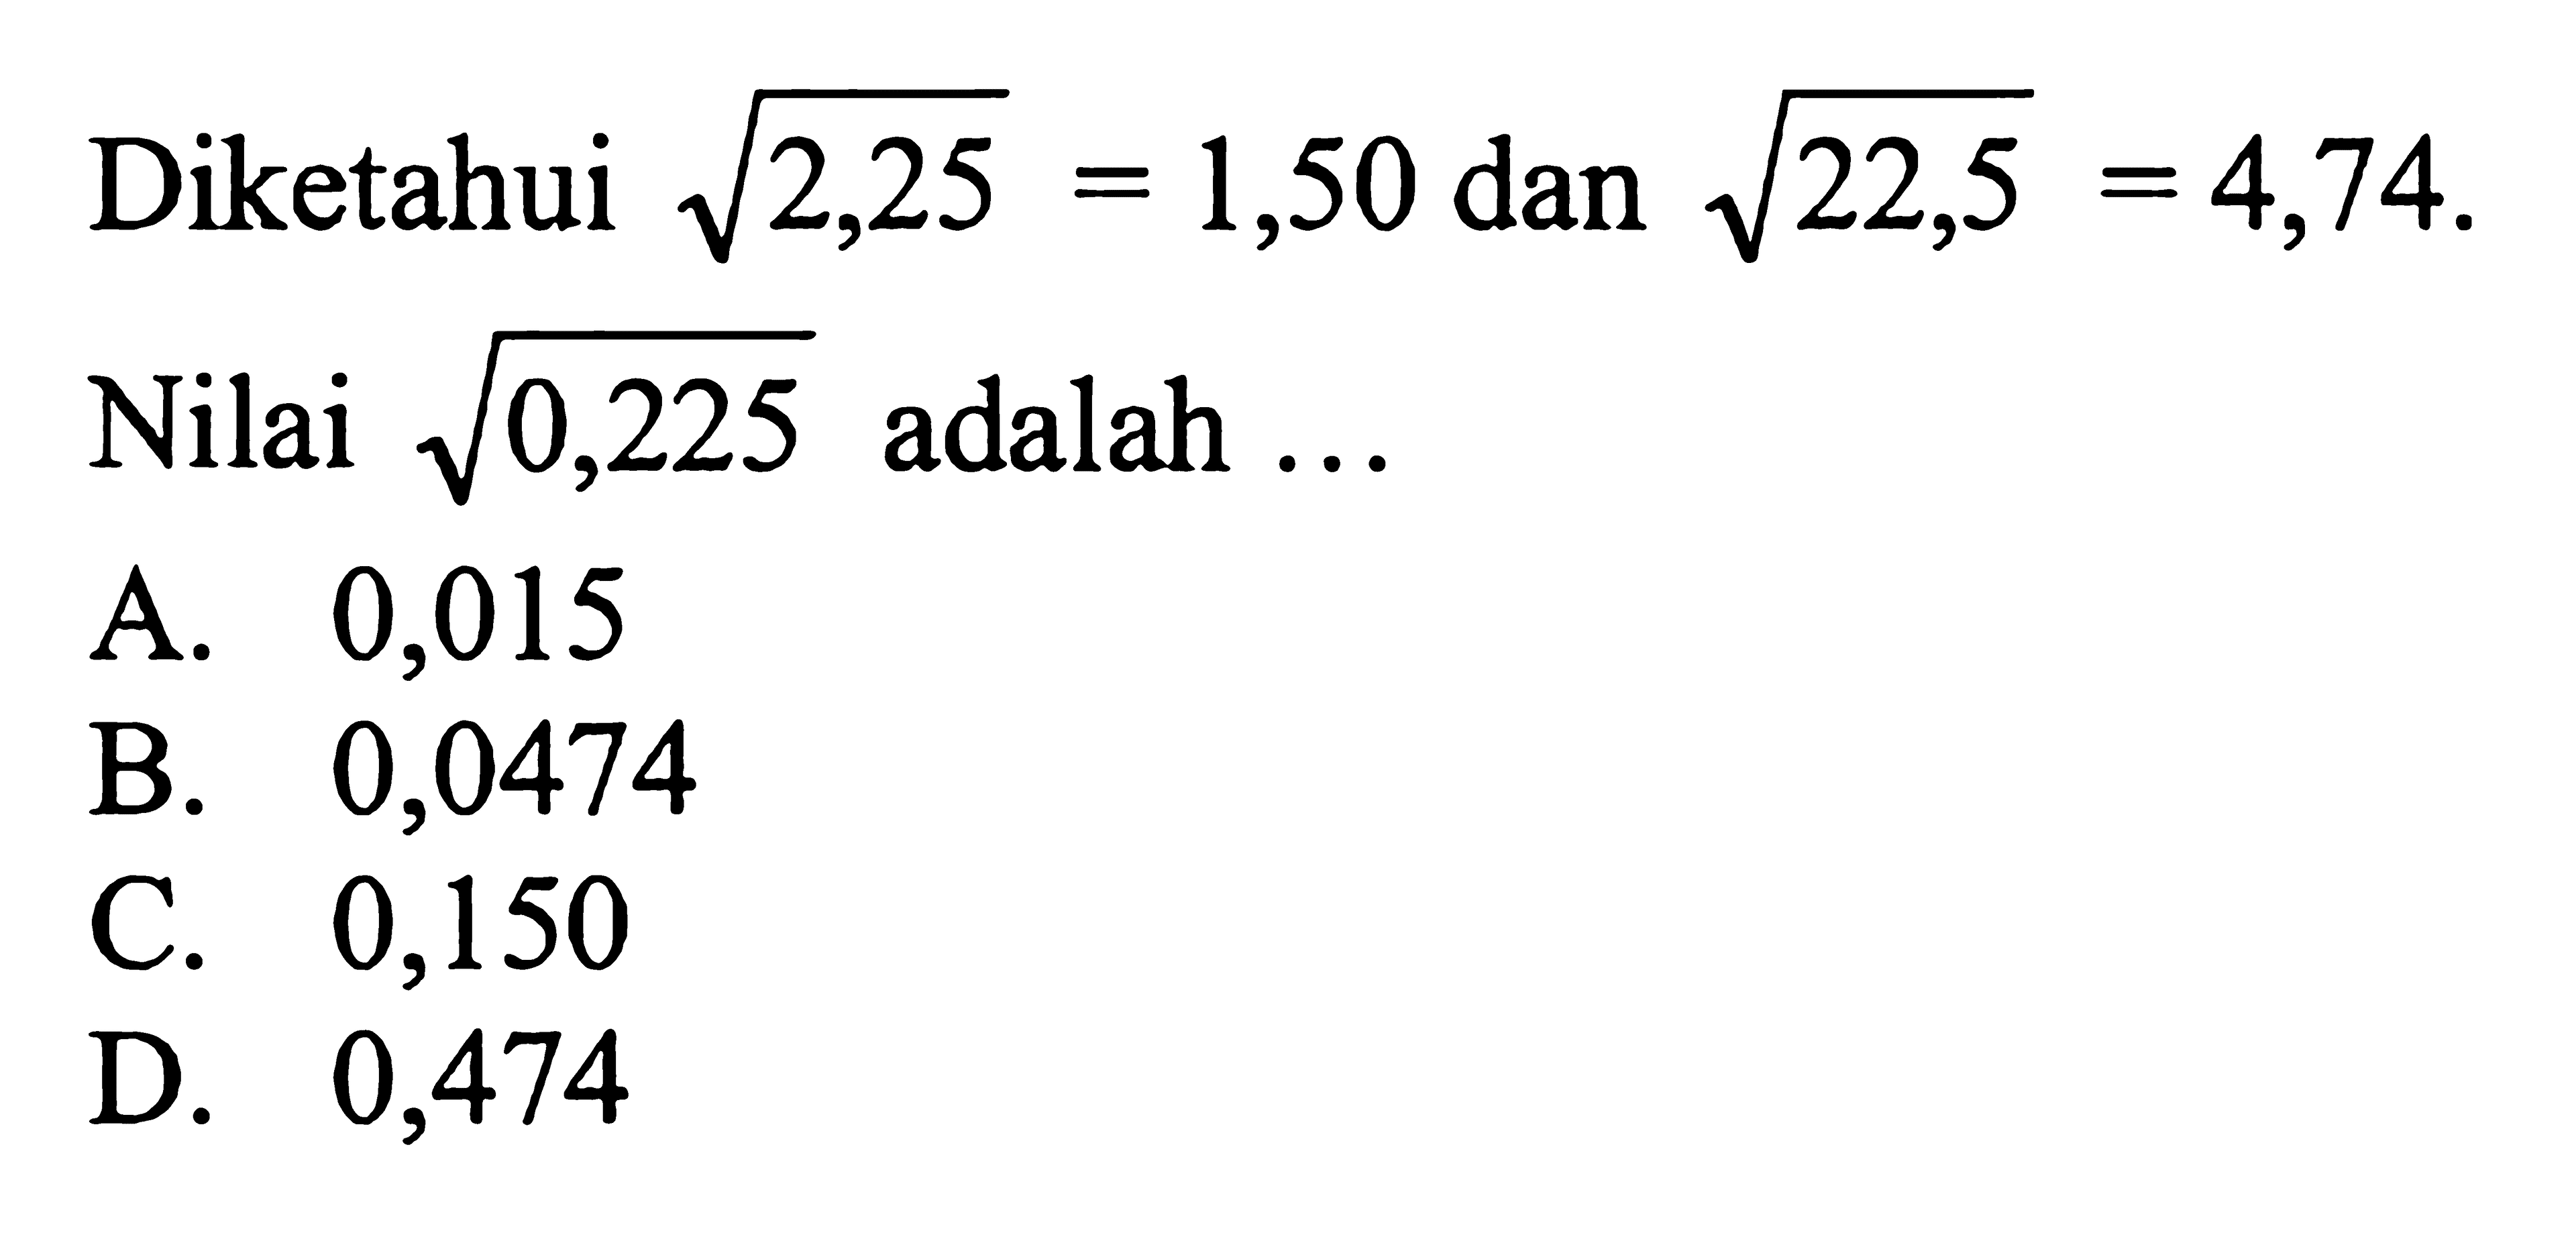 Diketahui akar(2,25) = 1,50 dan akar(22,5) =4,74. Nilai akar(0,225) adalah  ...